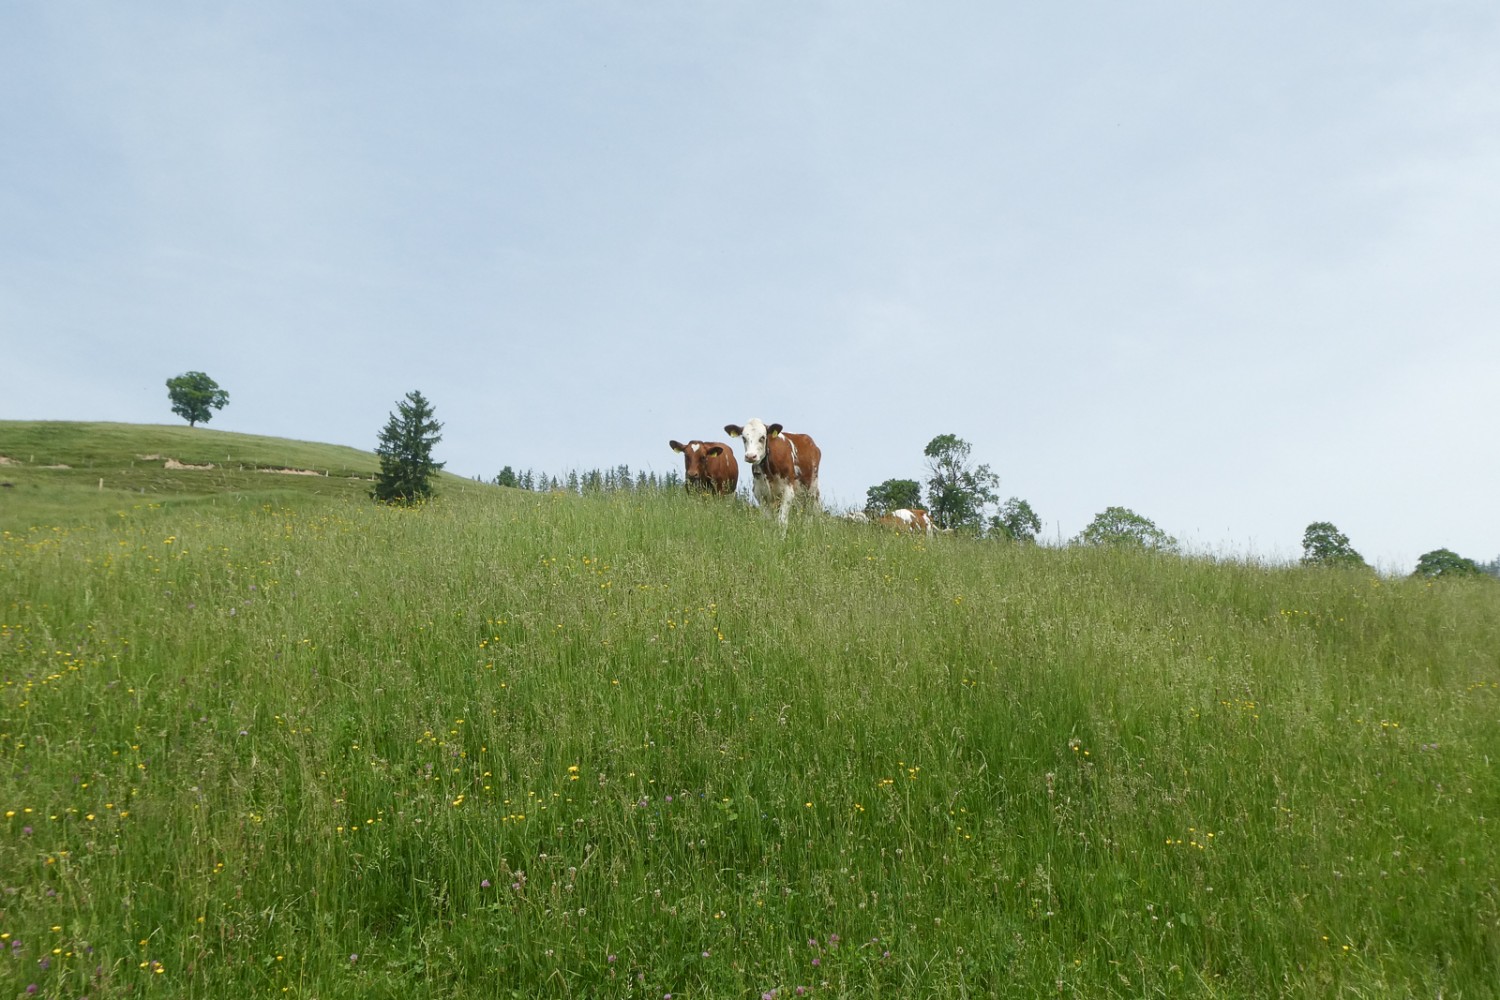 Dans la région d’Eriz, les prairies sont utilisées à des fins agricoles. Photo: Tatjana Häuselmann